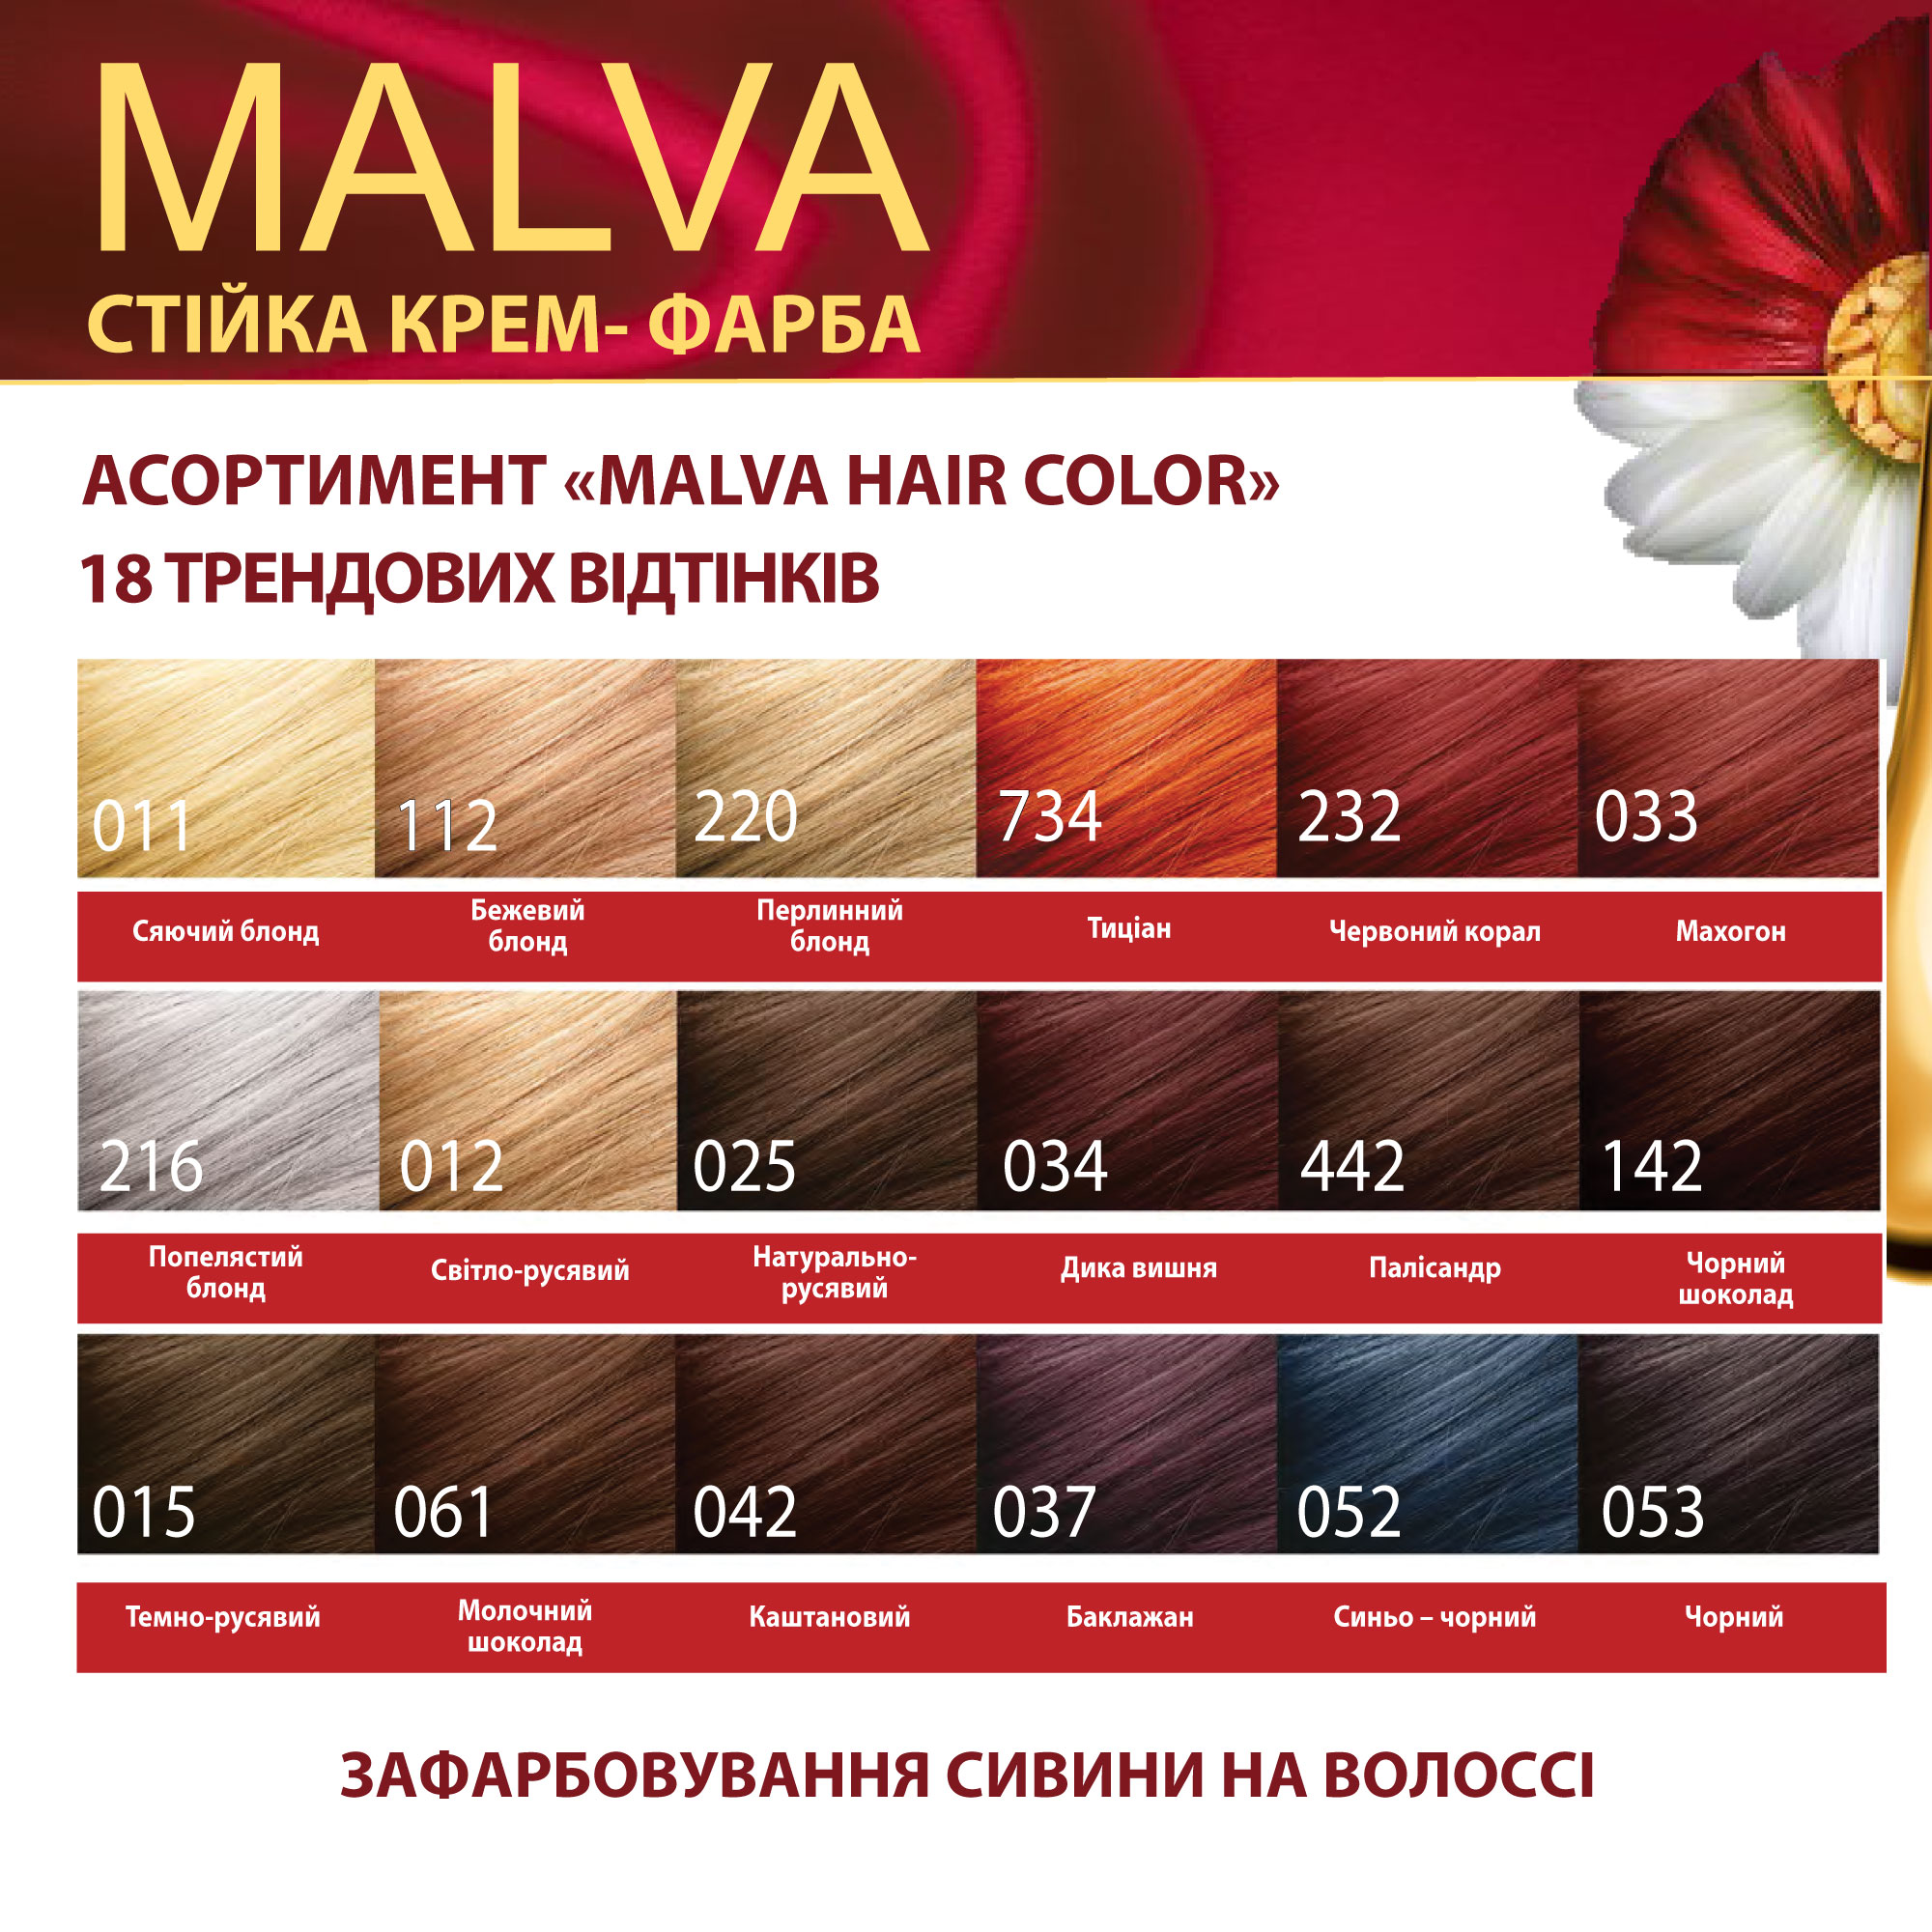 Крем-фарба для волосся Acme Color Malva, відтінок 142 (Чорний шоколад), 95 мл - фото 6